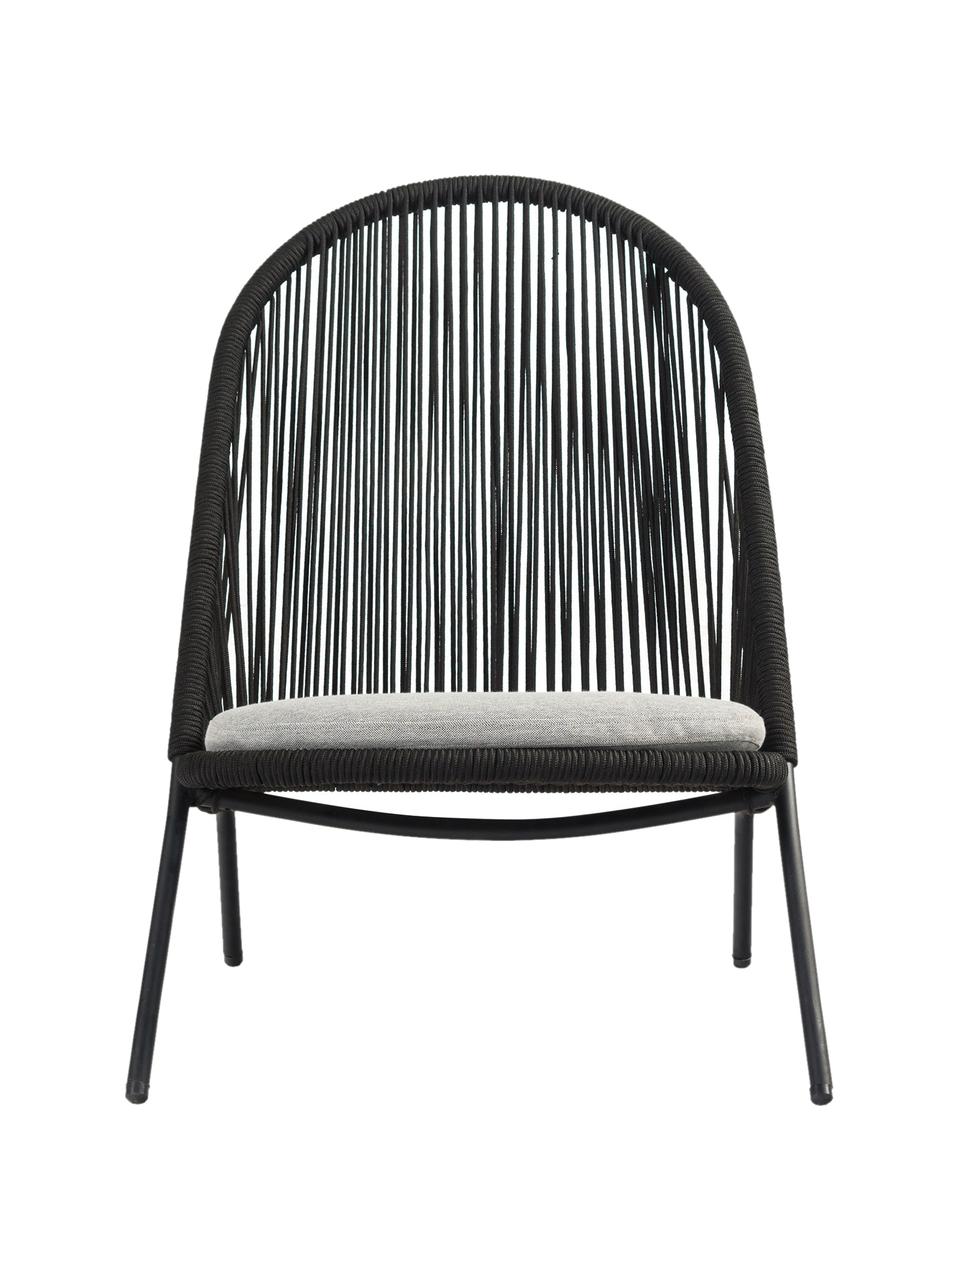 Sessel Shann mit Kunstgeflecht, Sitzfläche: Polyethylen-Geflecht, Gestell: Metall, pulverbeschichtet, Schwarz, Hellgrau, B 63 x T 73 cm